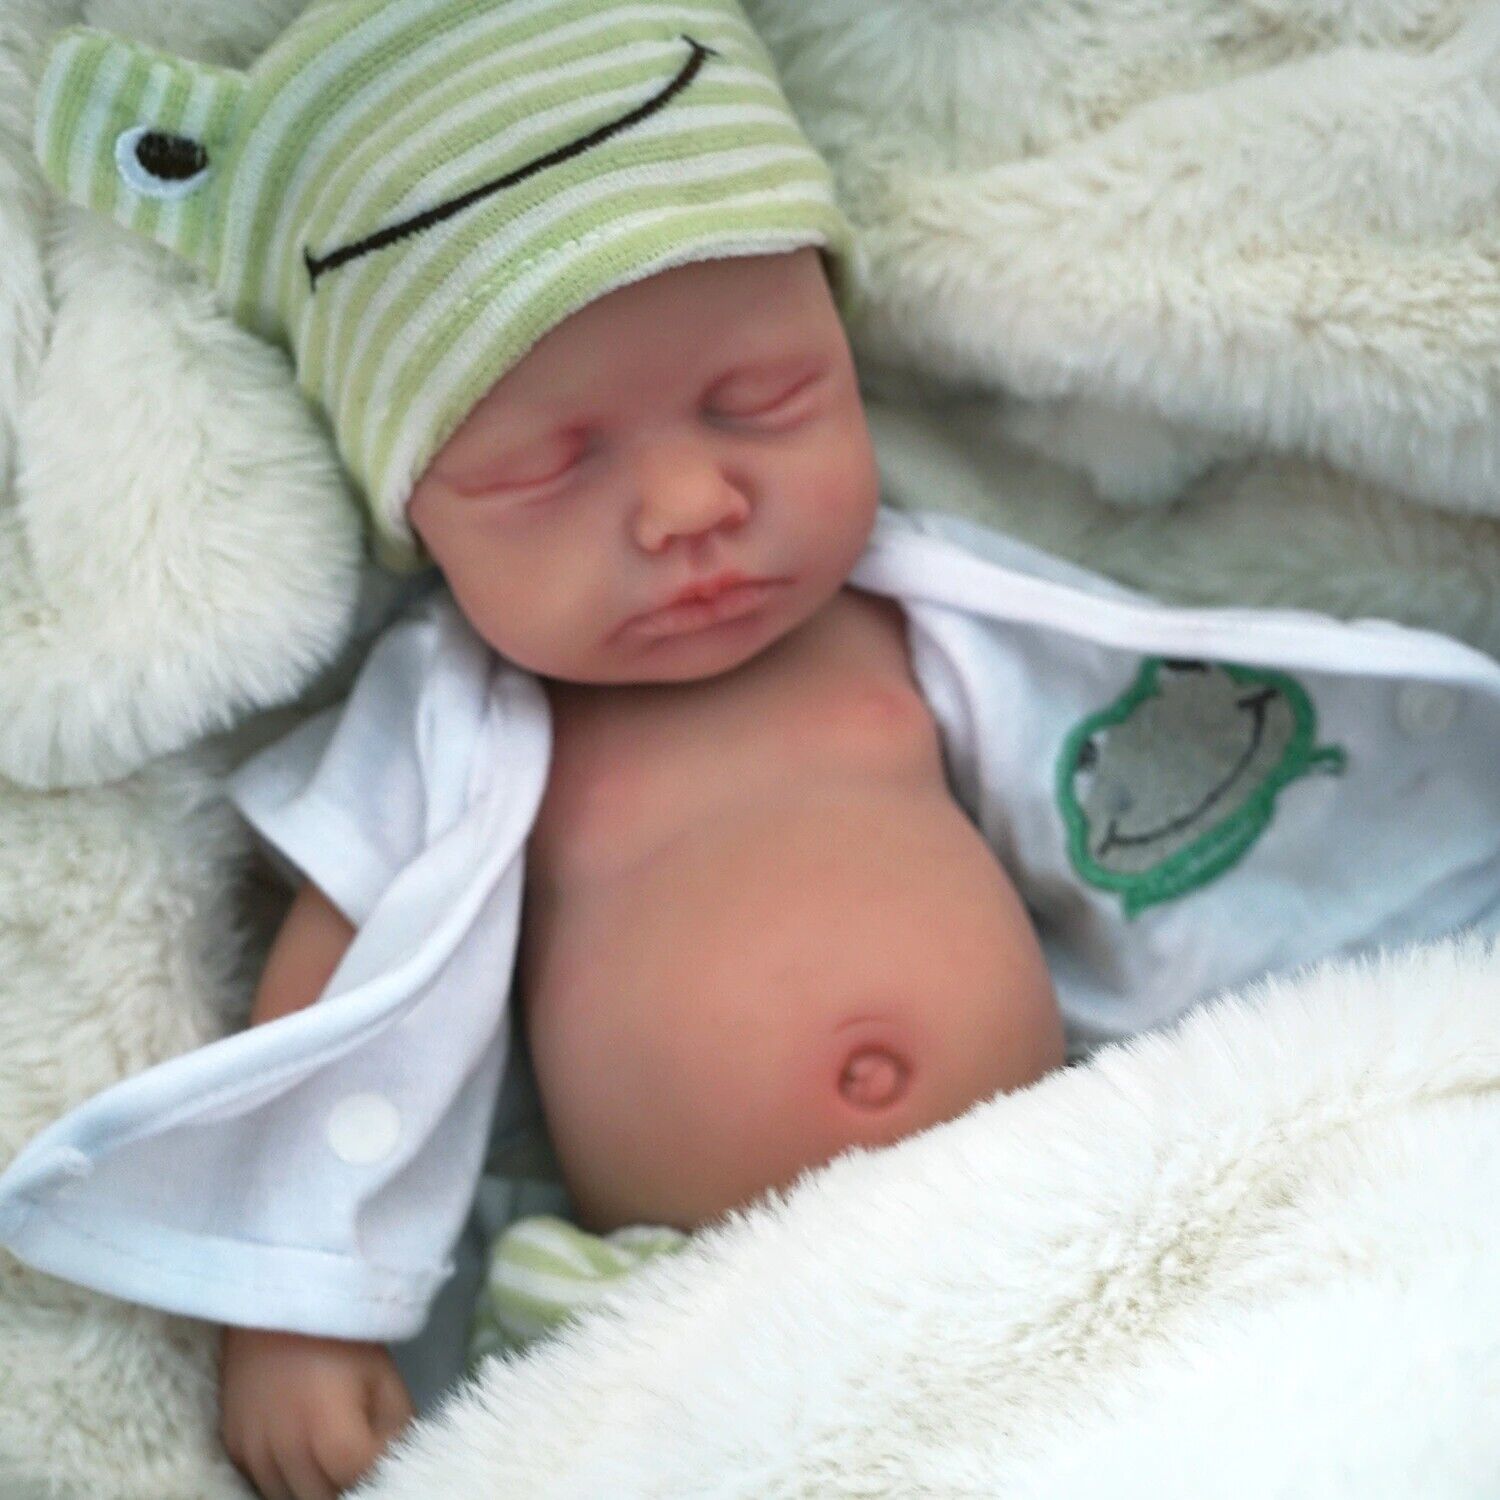 Baby Boy Doll Full Body Silicone Lifelike Reborn Newborn Doll Toy 12" Plus Gift Unbranded - фотография #6